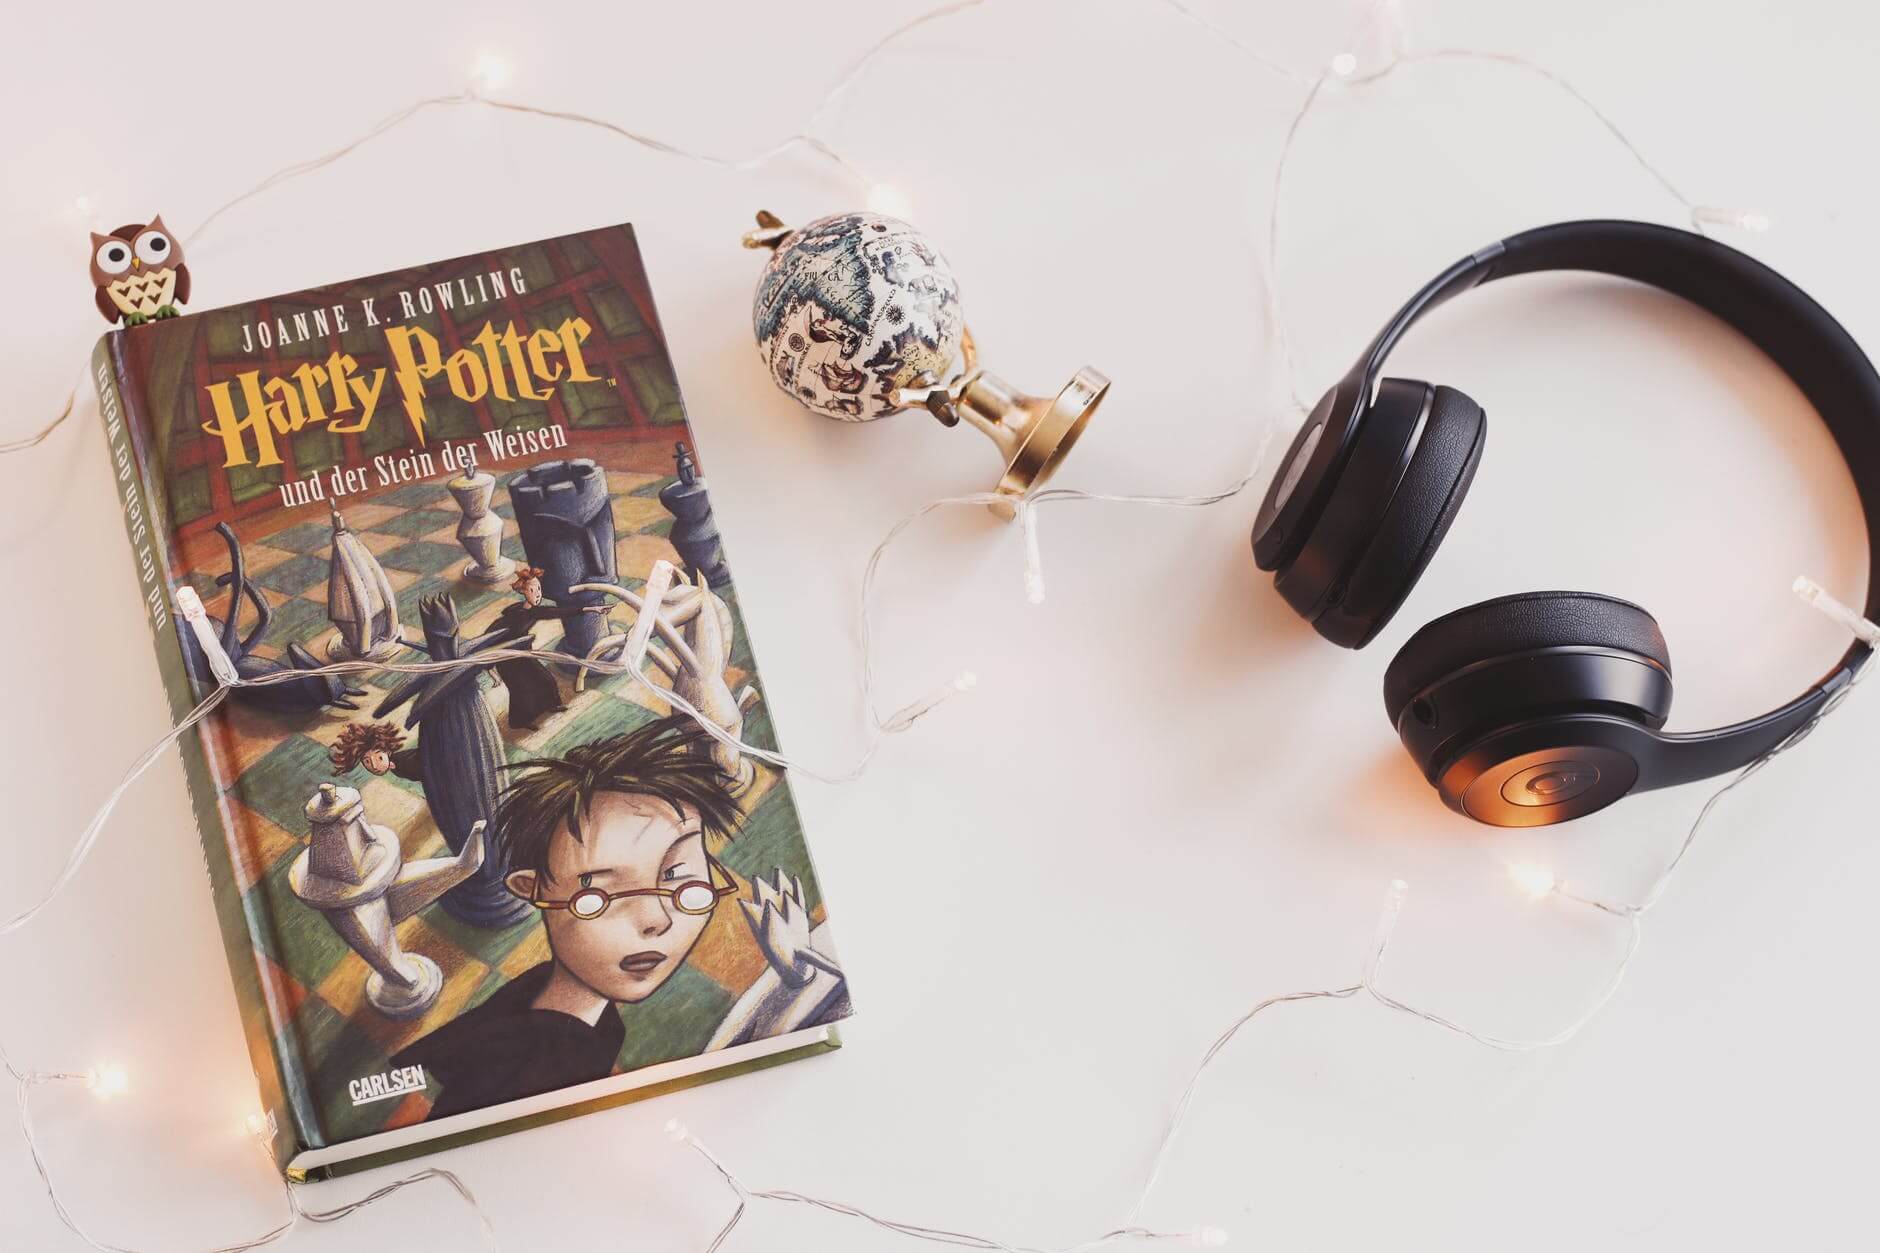 Knjiga Harry Potter i slušalice na bijelom stolu